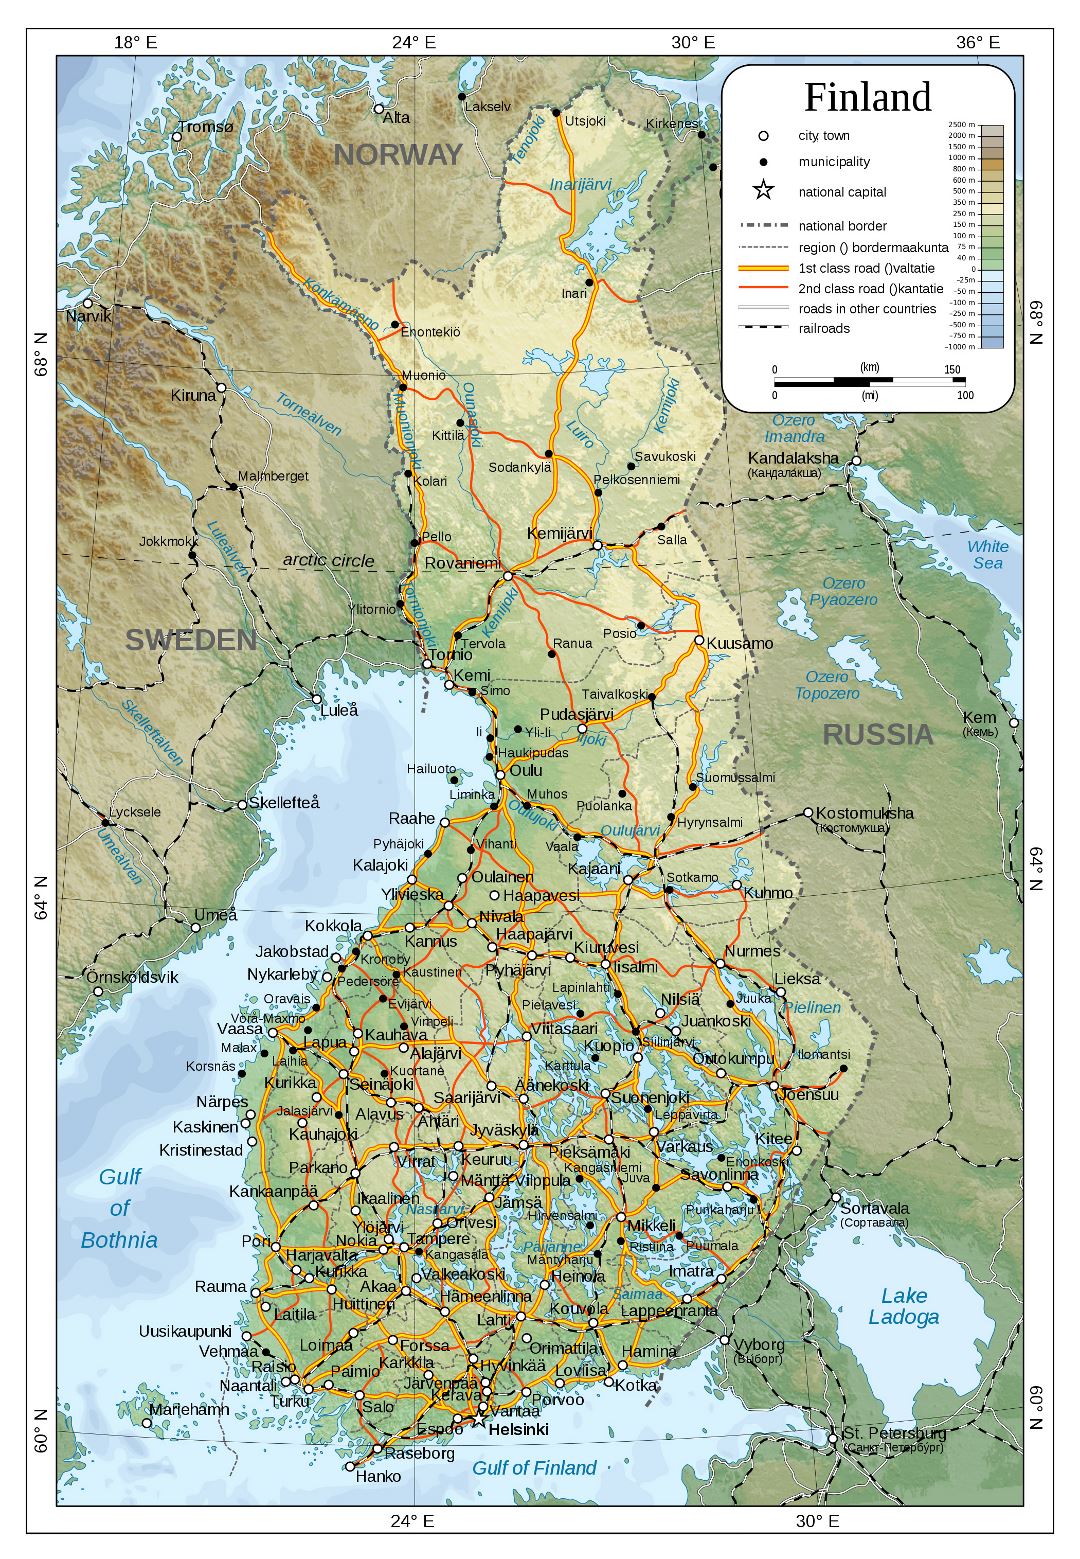 Mapa físico detallado grande de Finlandia con carreteras, ferrocarriles y ciudades